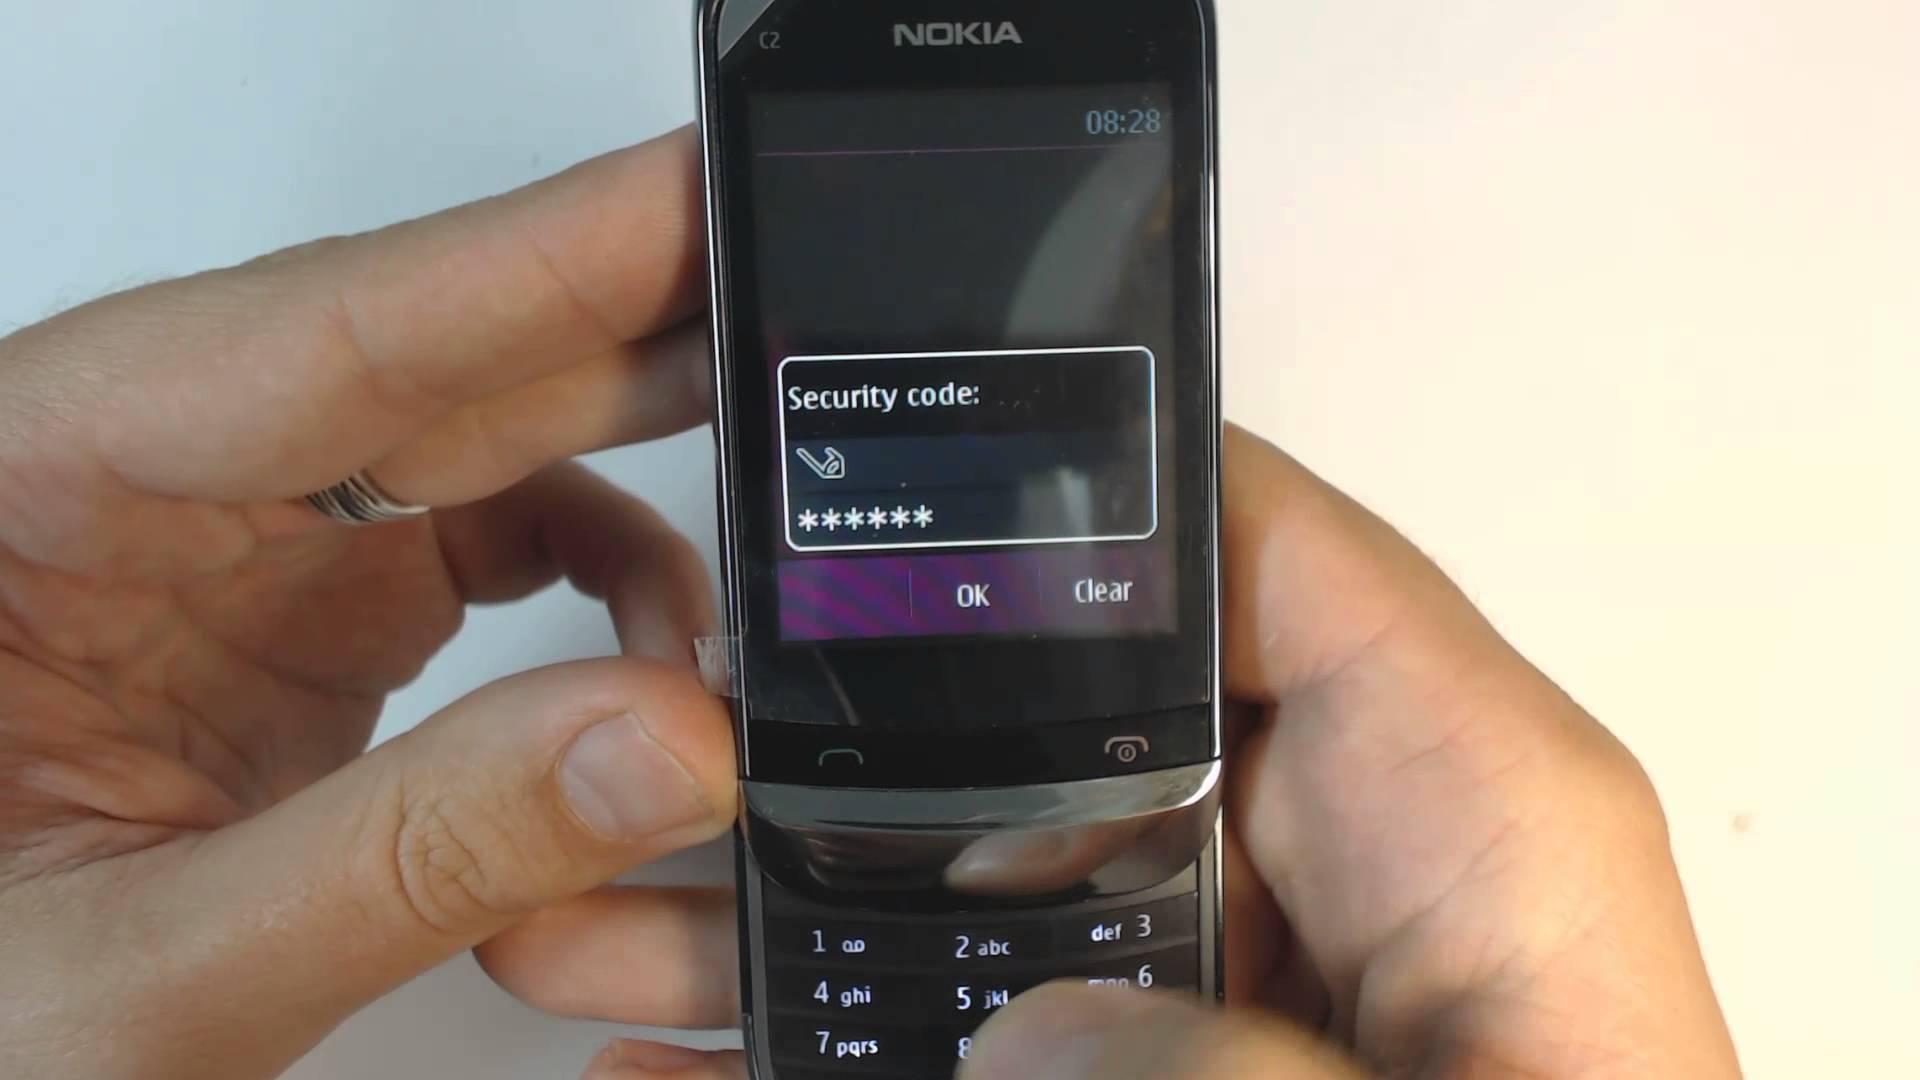 Пин код нокиа. Защитный код Nokia кнопочный 2 SIM. Защитный код нокиа кнопочный c2. Nokia c2ta-1204. Nokia 7210 защитный код.